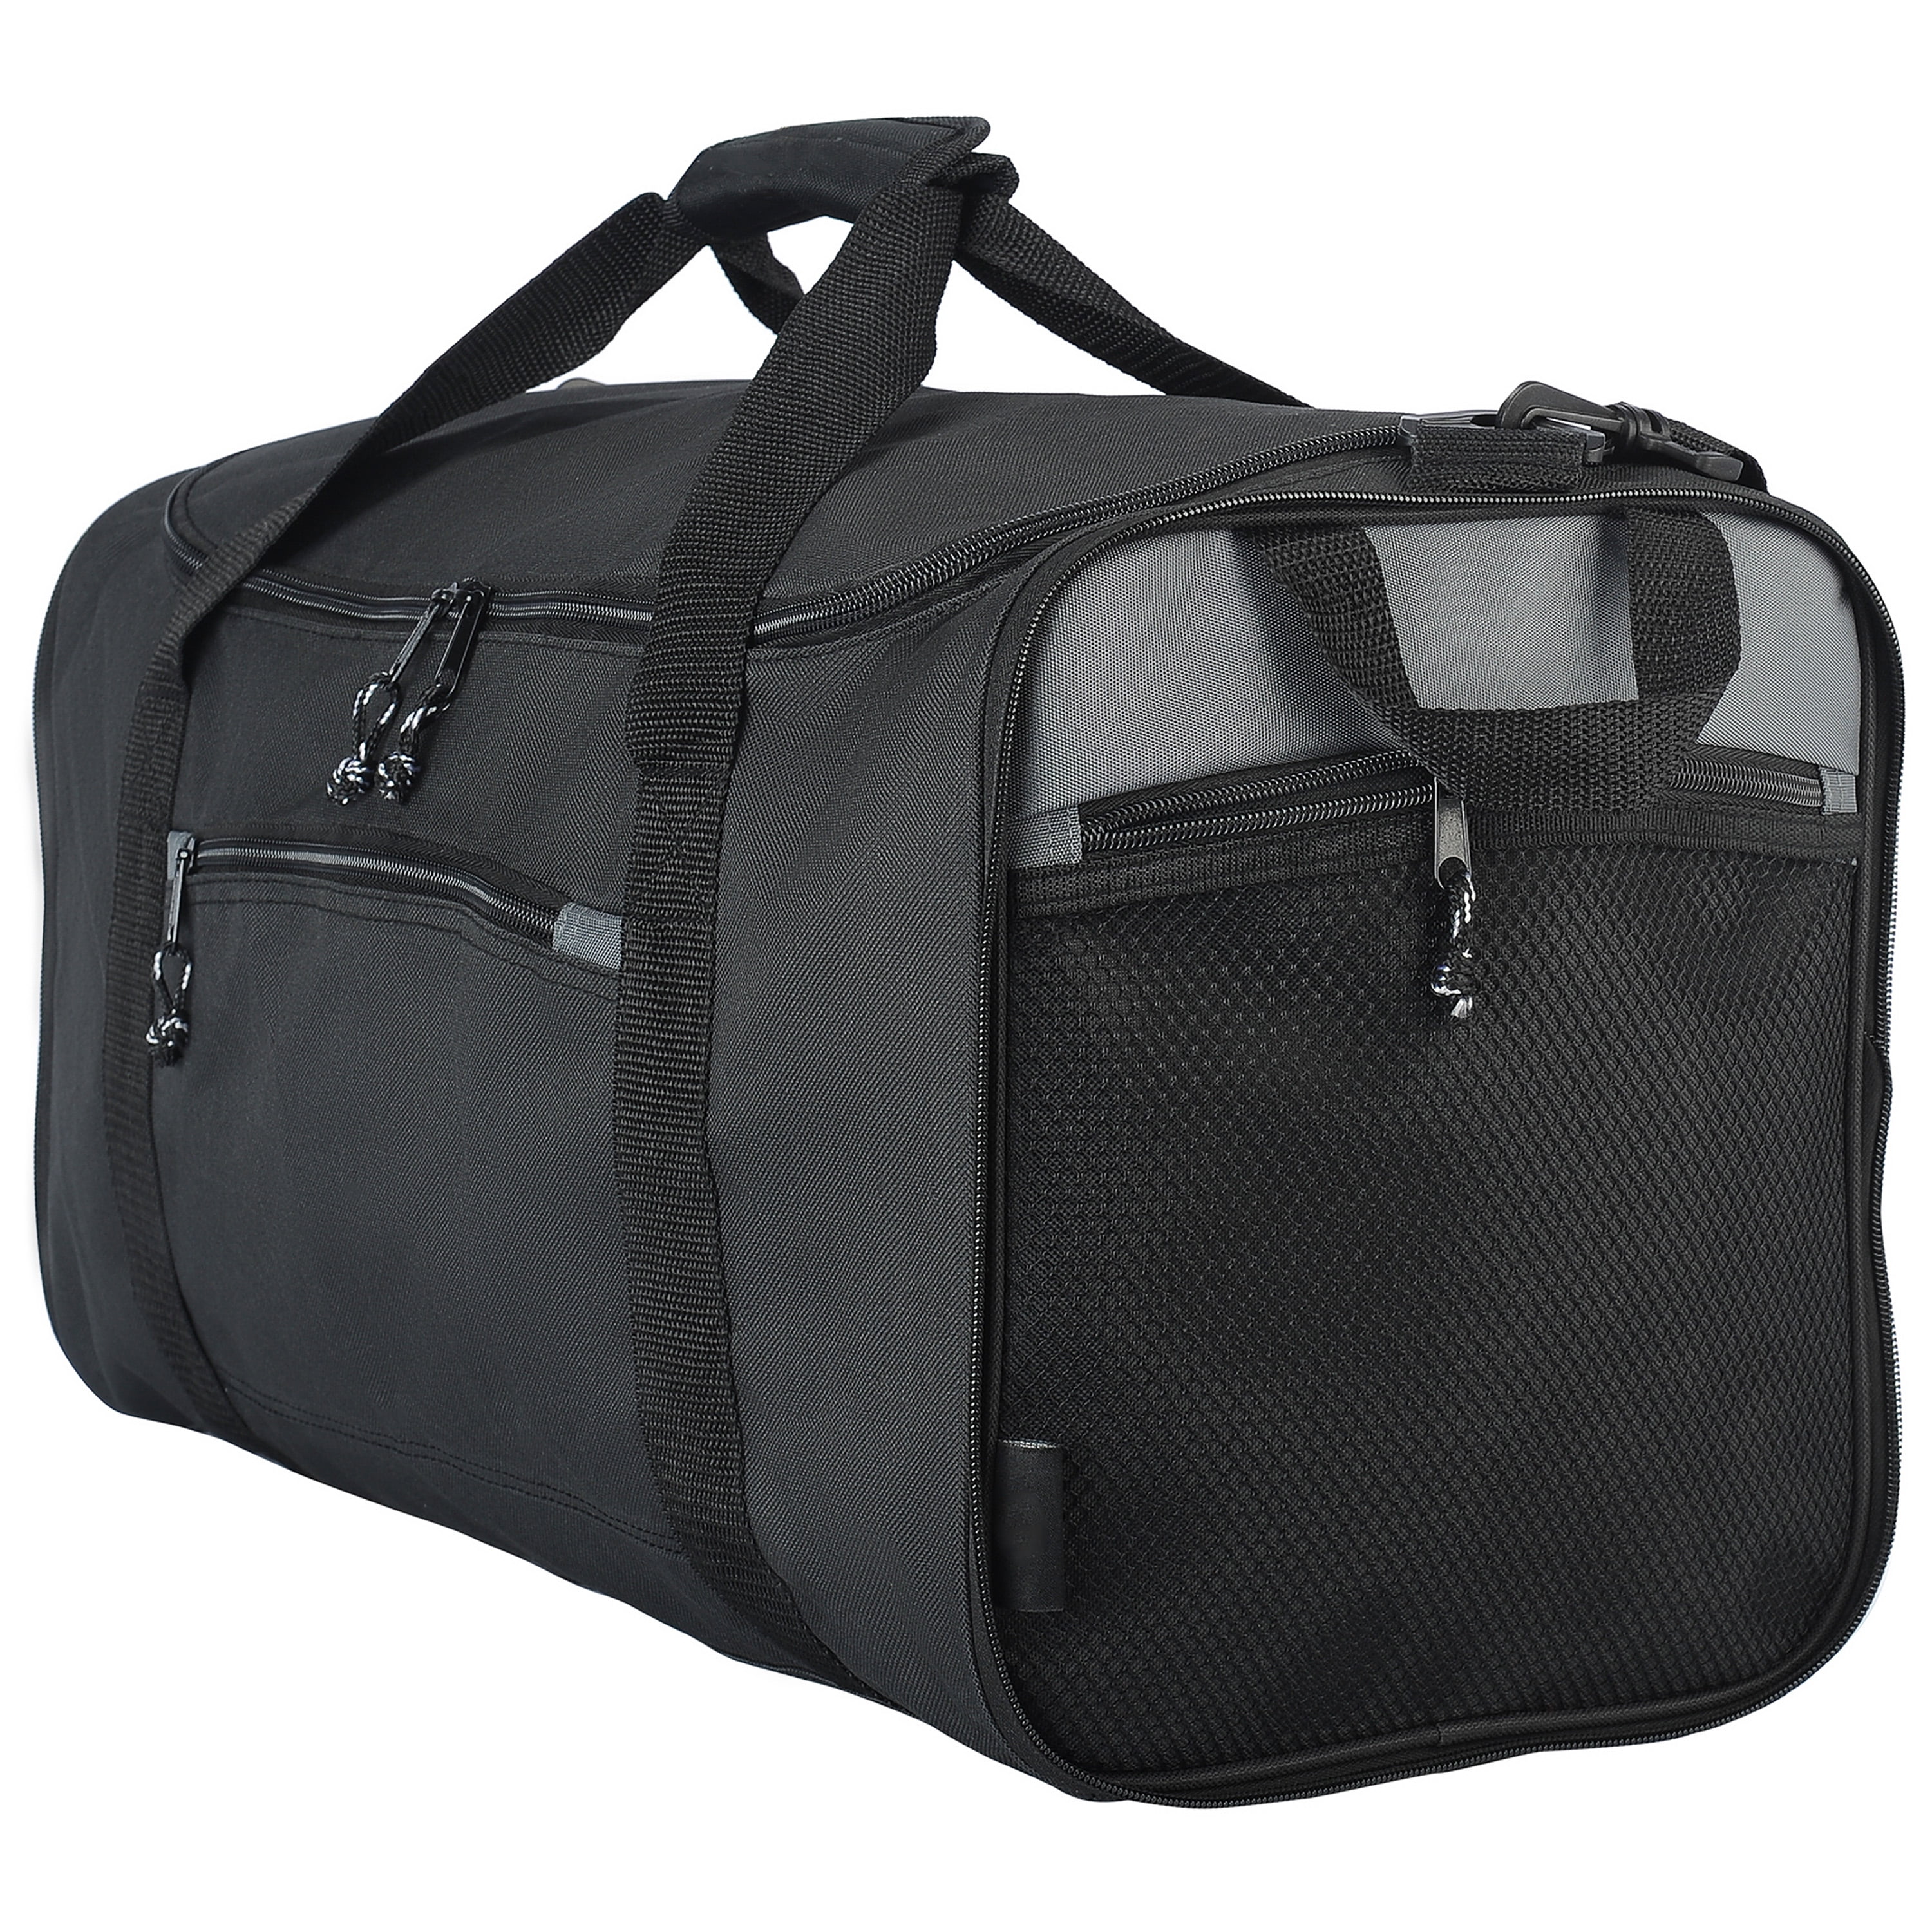 Protégé 20 Collapsible Sport and Travel Duffel Bag, Black 